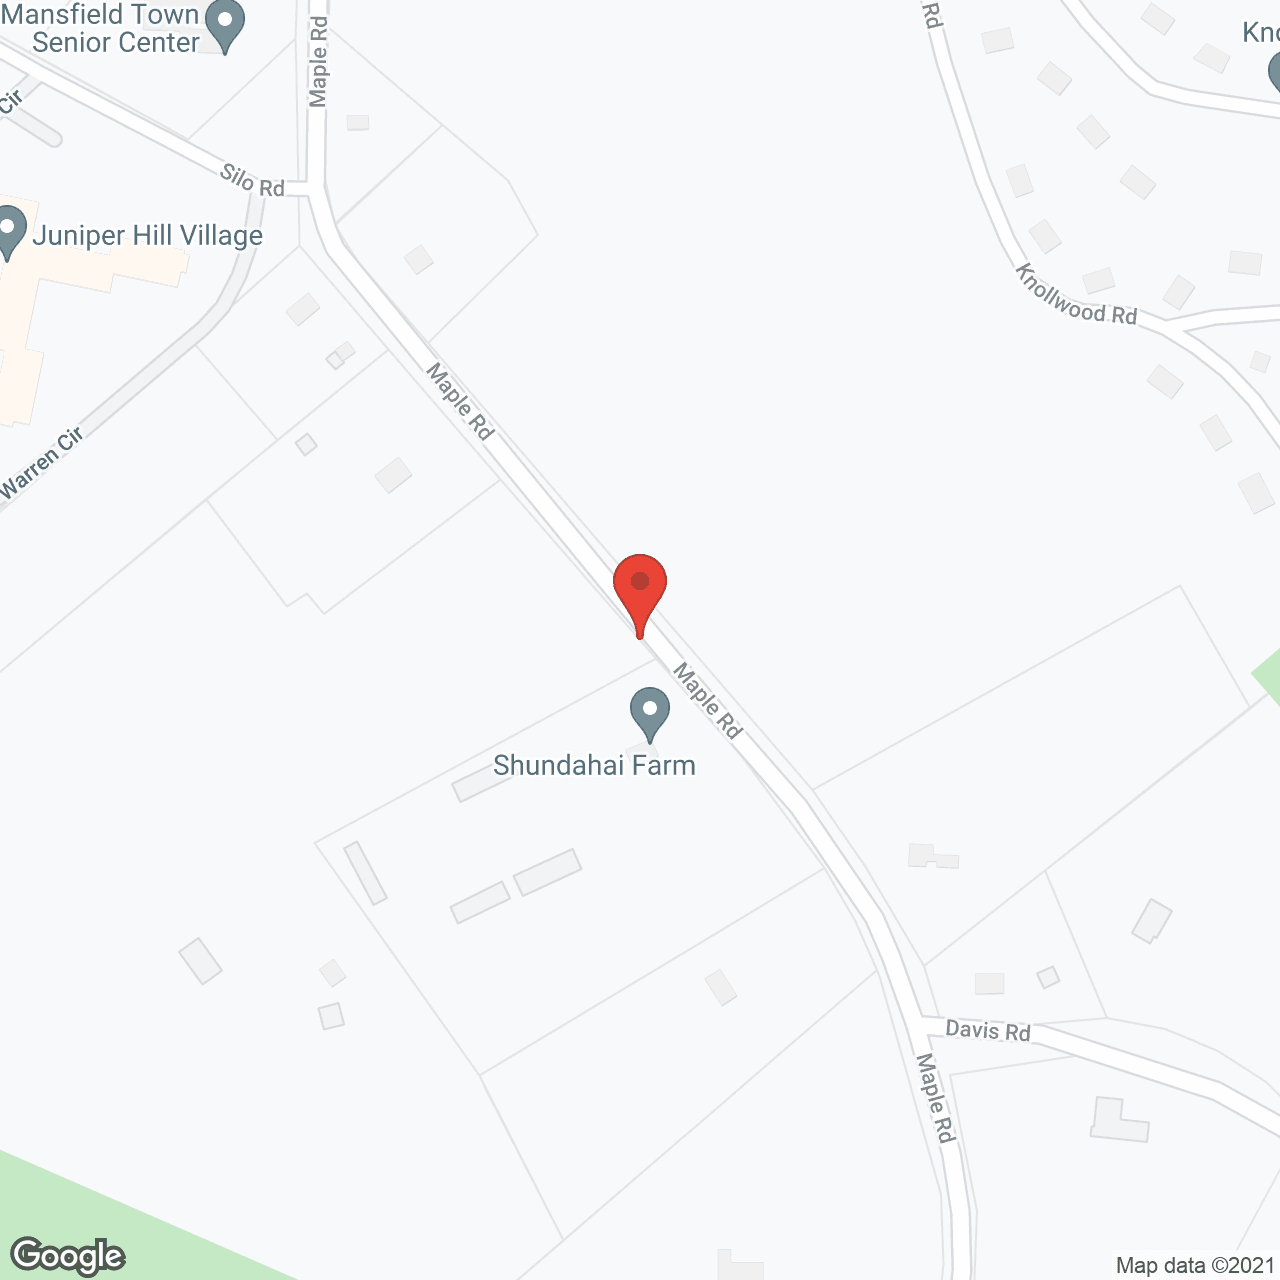 Juniper Hill Village in google map